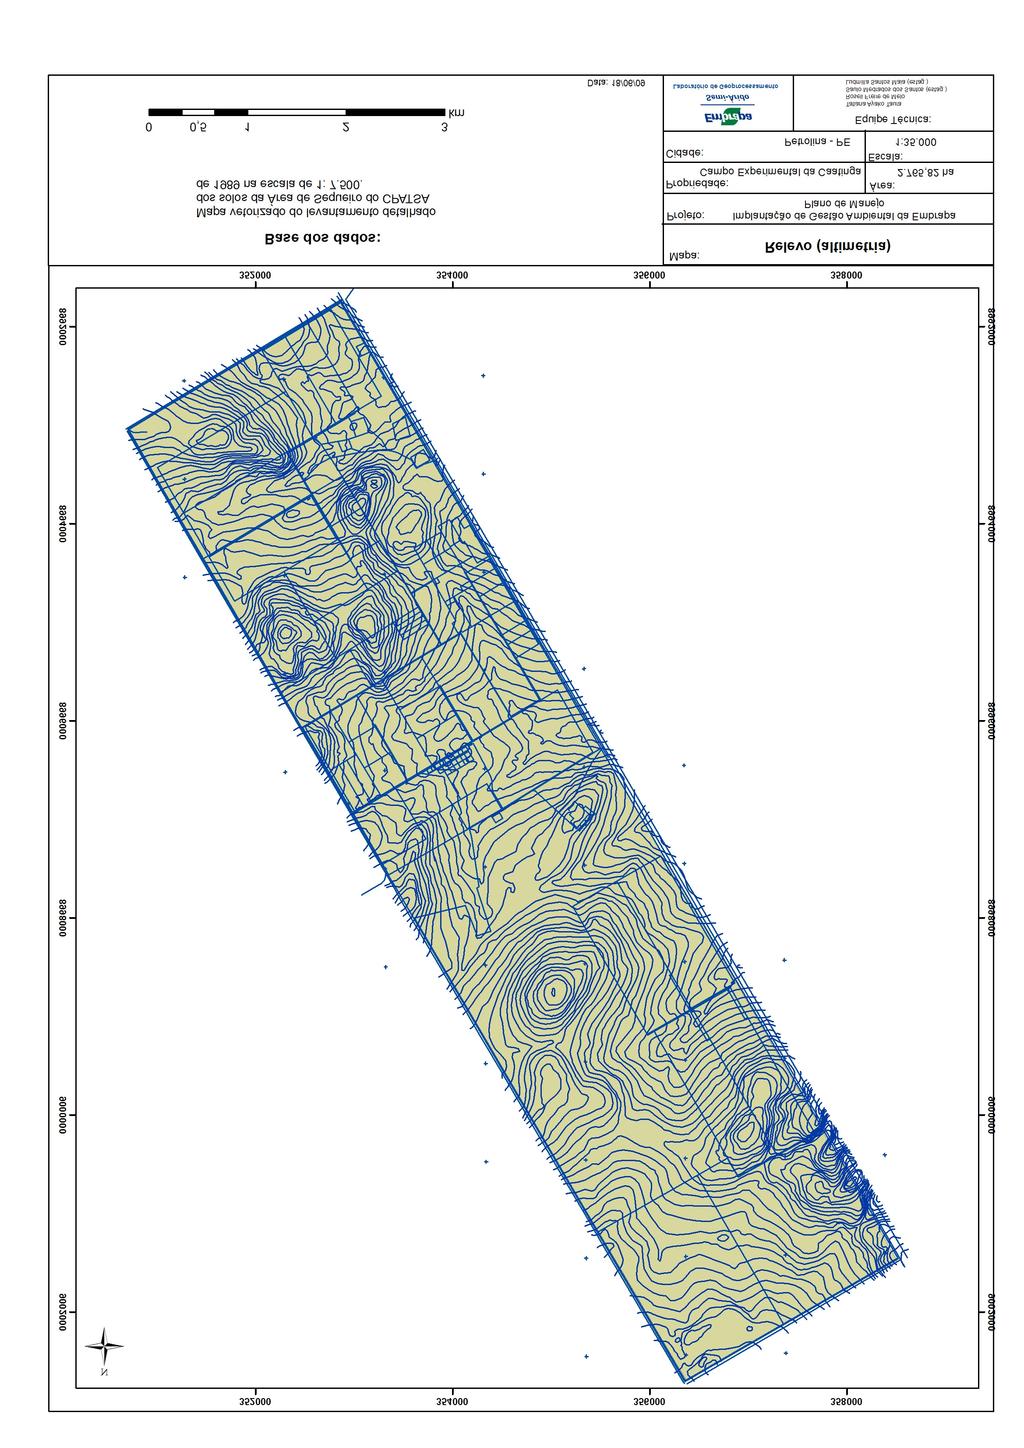 320 Campo experimental da Caatinga da Embrapa Semi-Árido a Fig. 1. Mapa das curvas de nível (a) e modelo digital do terreno (b).